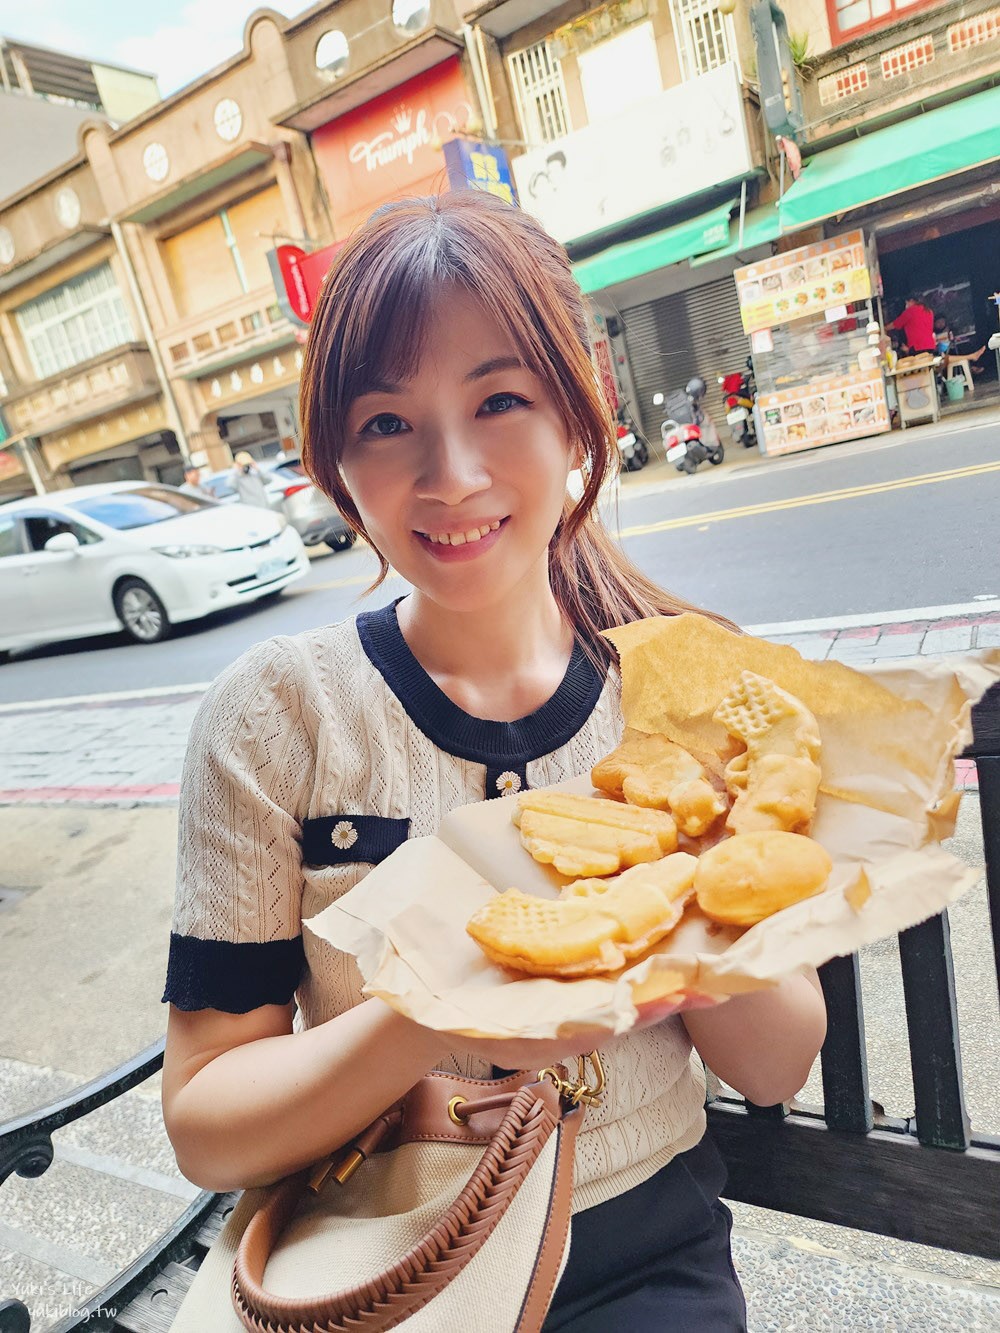 台南新化美食|新化市場口阿婆雞蛋糕|20元銅板價小吃太佛心 - yukiblog.tw